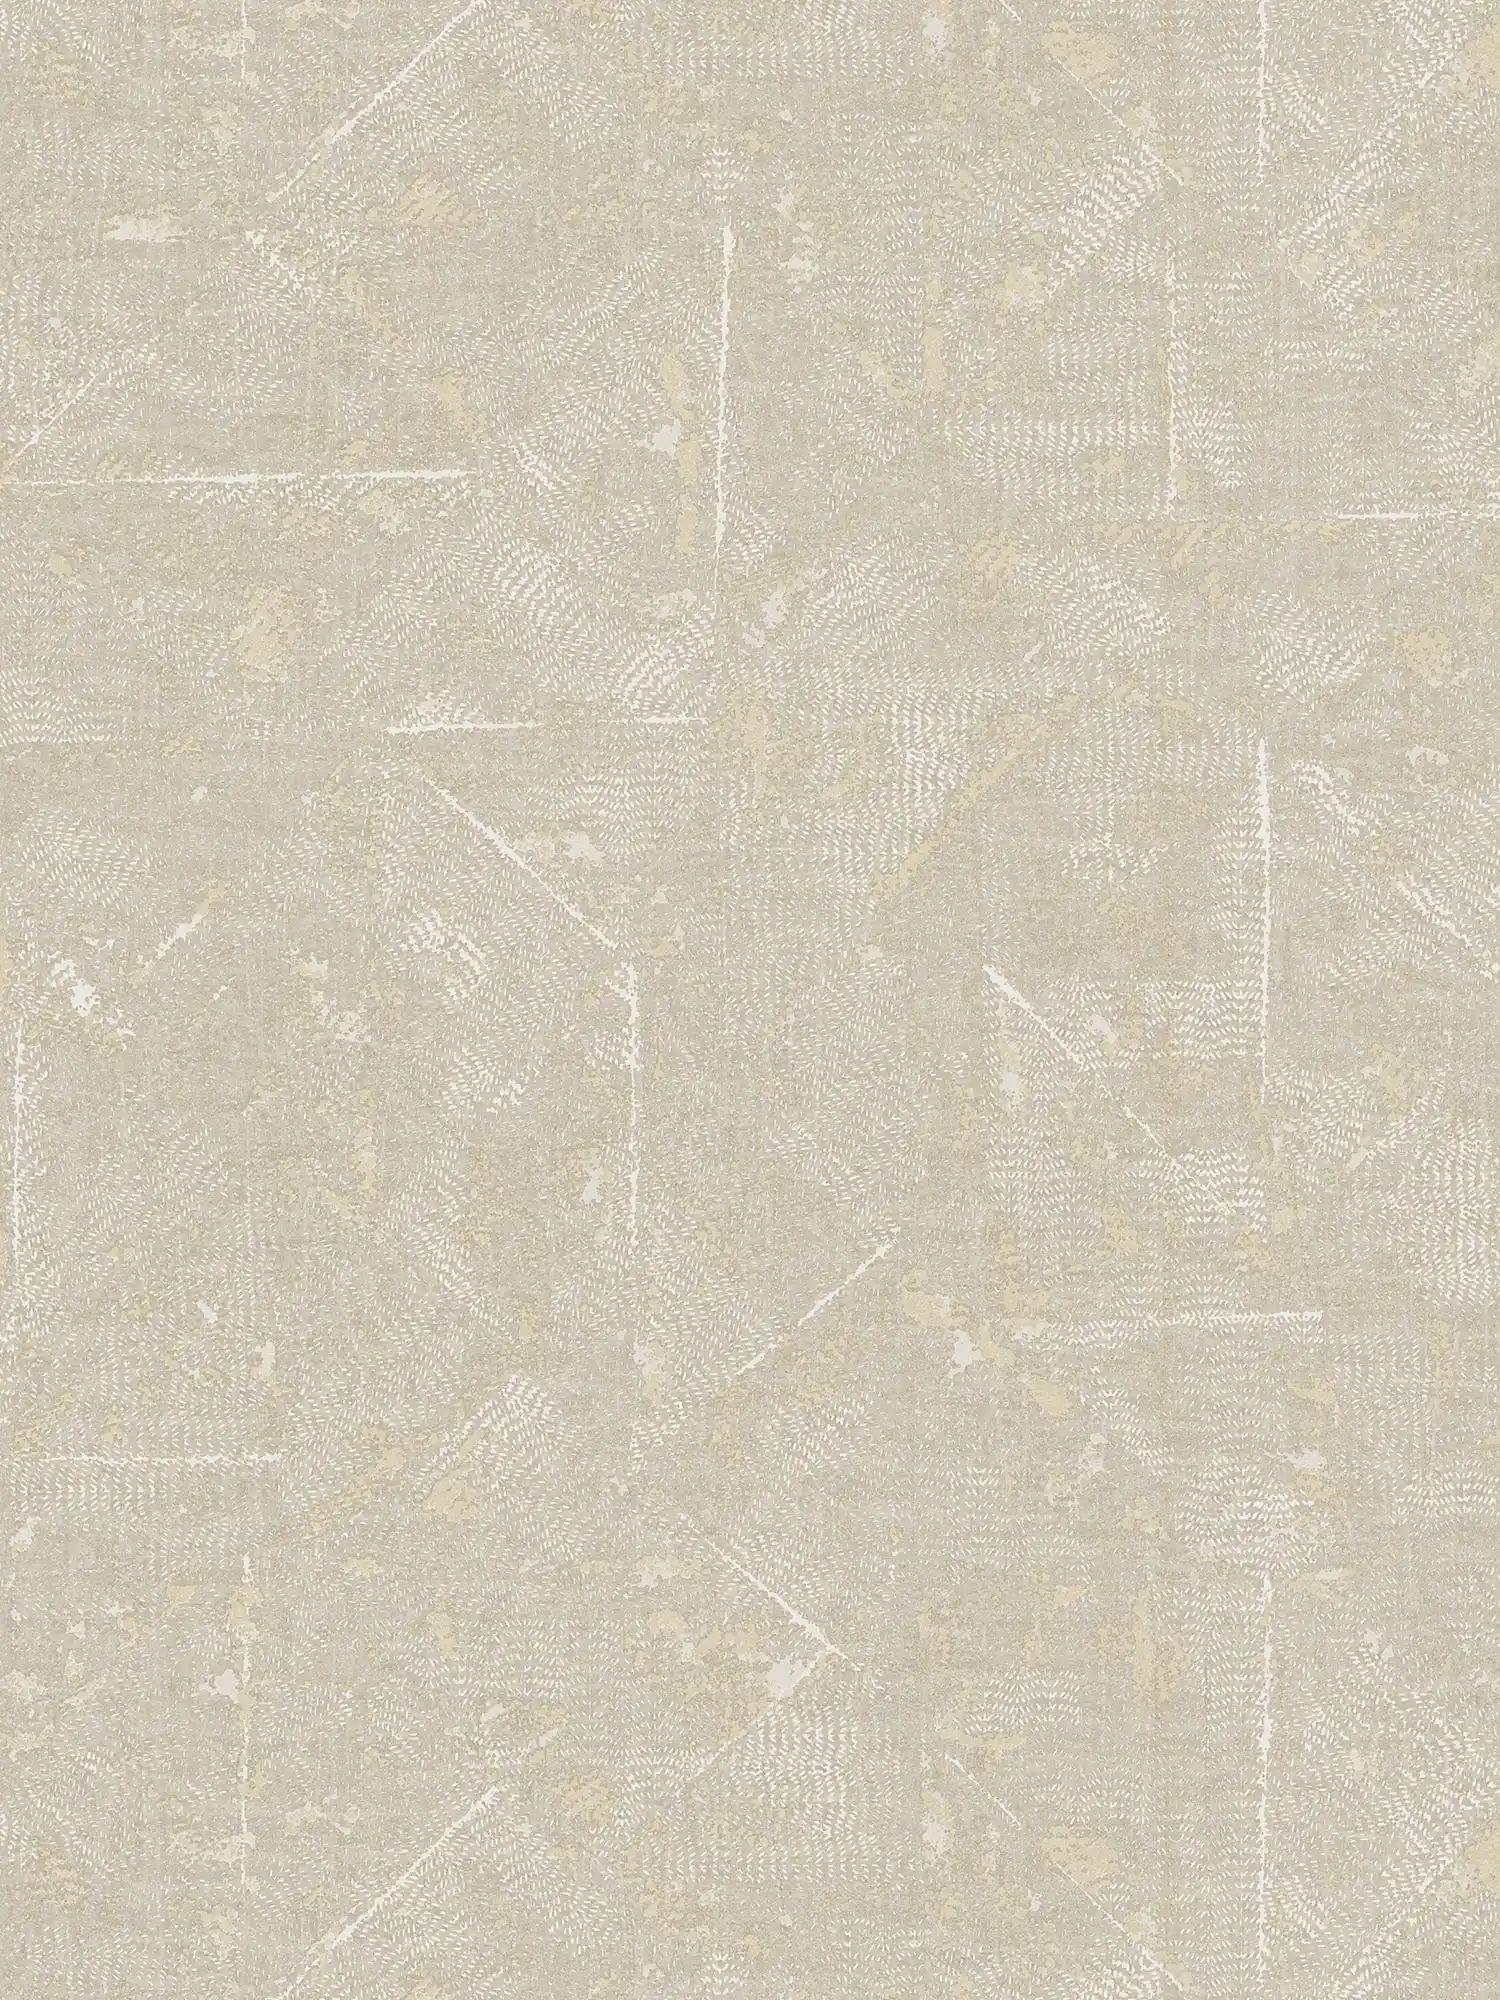 Behang met beige patroon en zilveren accenten - grijs, beige, zilver
